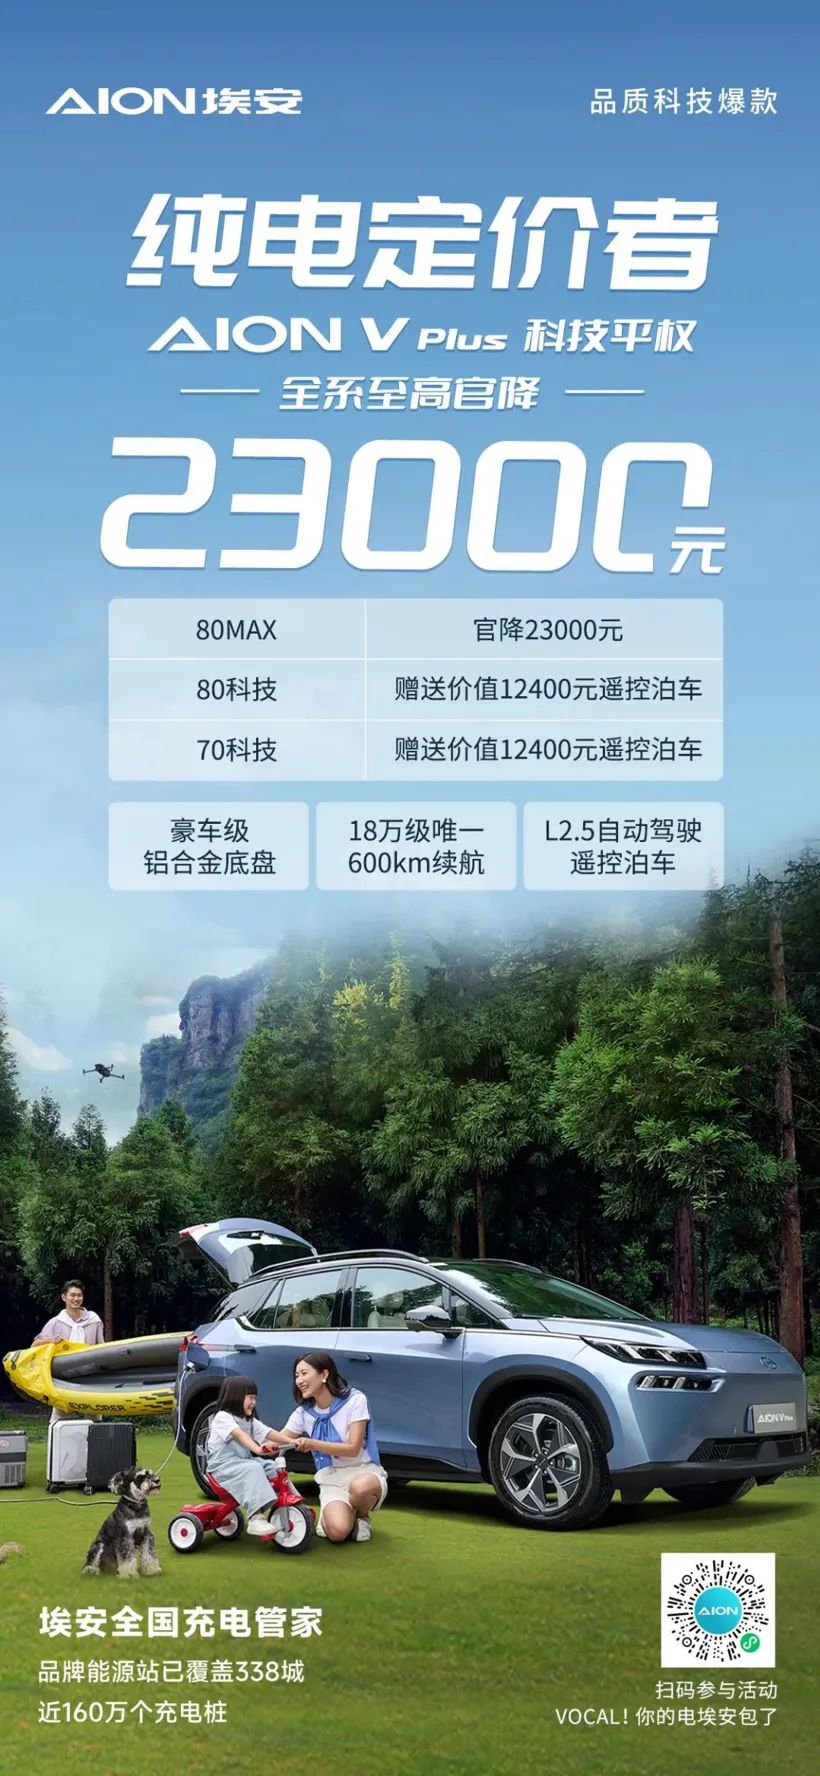 Todas las series GAC Aion V Plus tienen un precio de 23.000 RMB, el precio oficial más alto